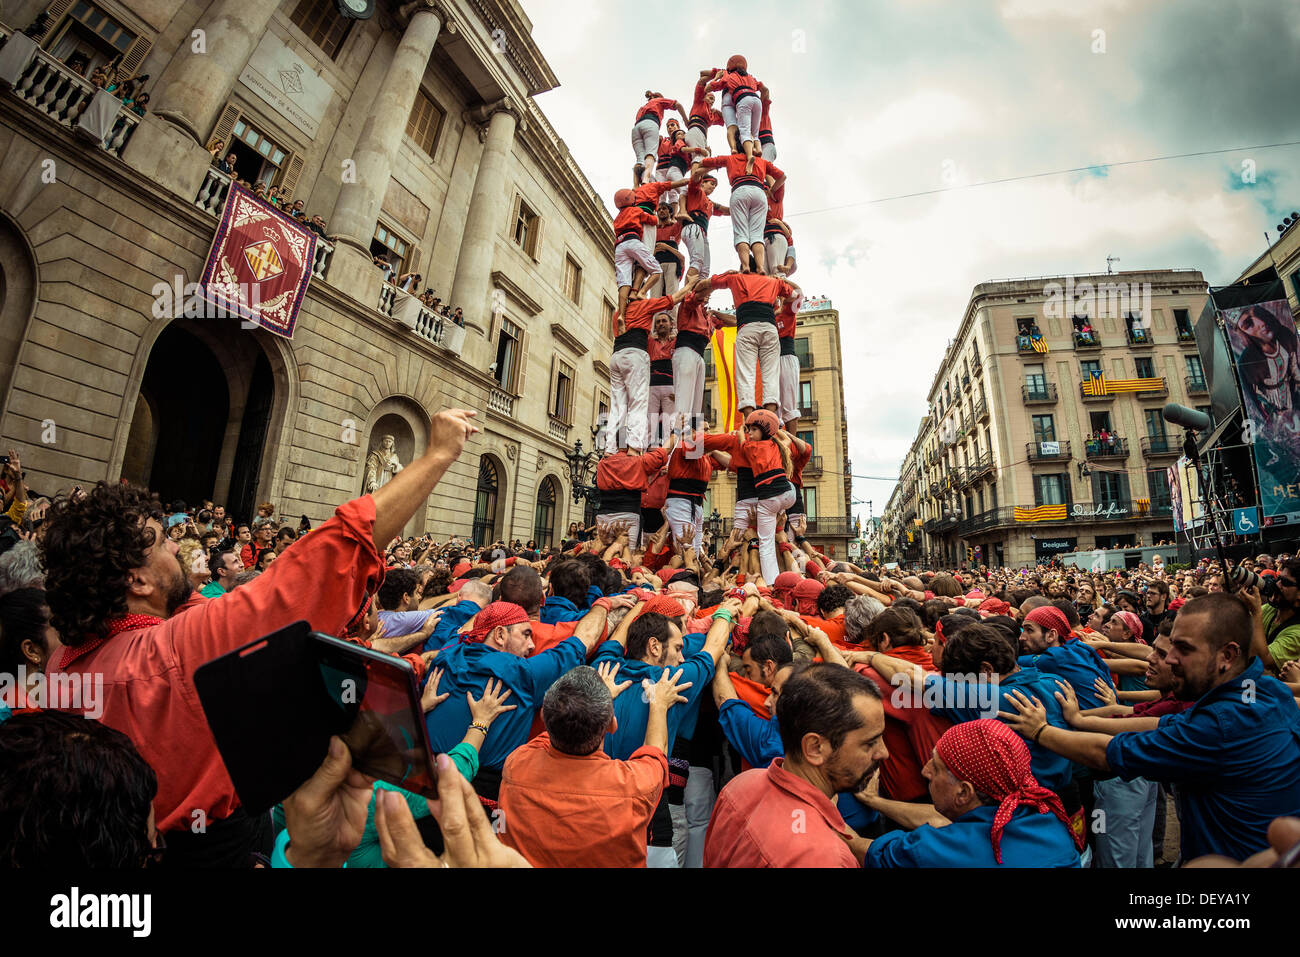 Barcelone, Espagne. Sep 24, 2013 : l'Castellers de Barcelone construire une tour humaine en face de l'hôtel de ville de Barcelone au cours de la ville, festival de la Merce, 2013 © matthi/Alamy Live News Banque D'Images